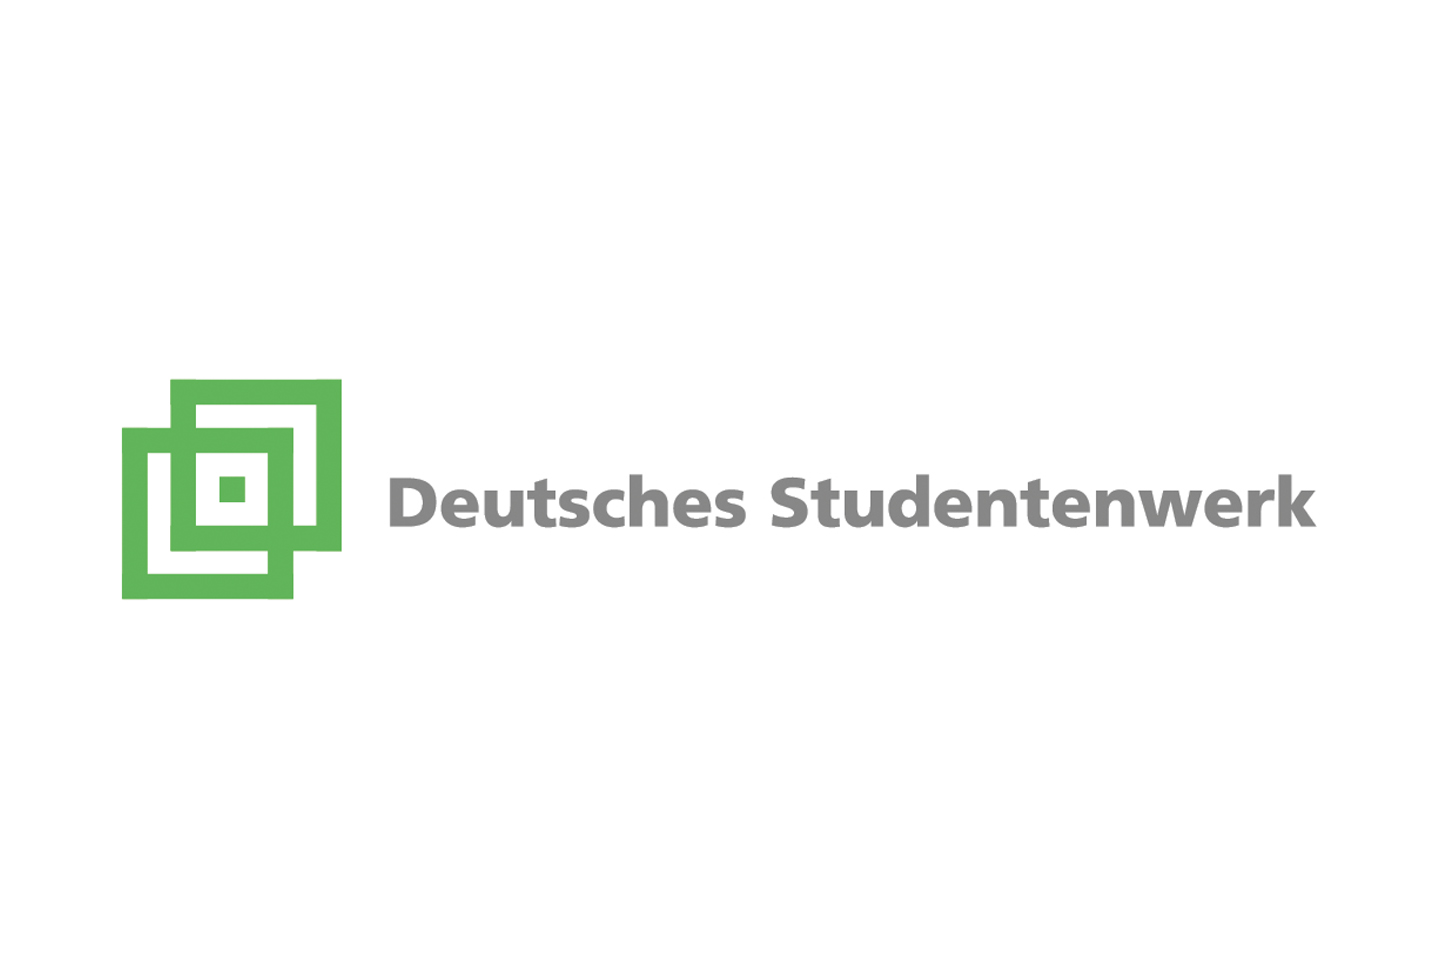 Logo Deutsches Studentenwerk